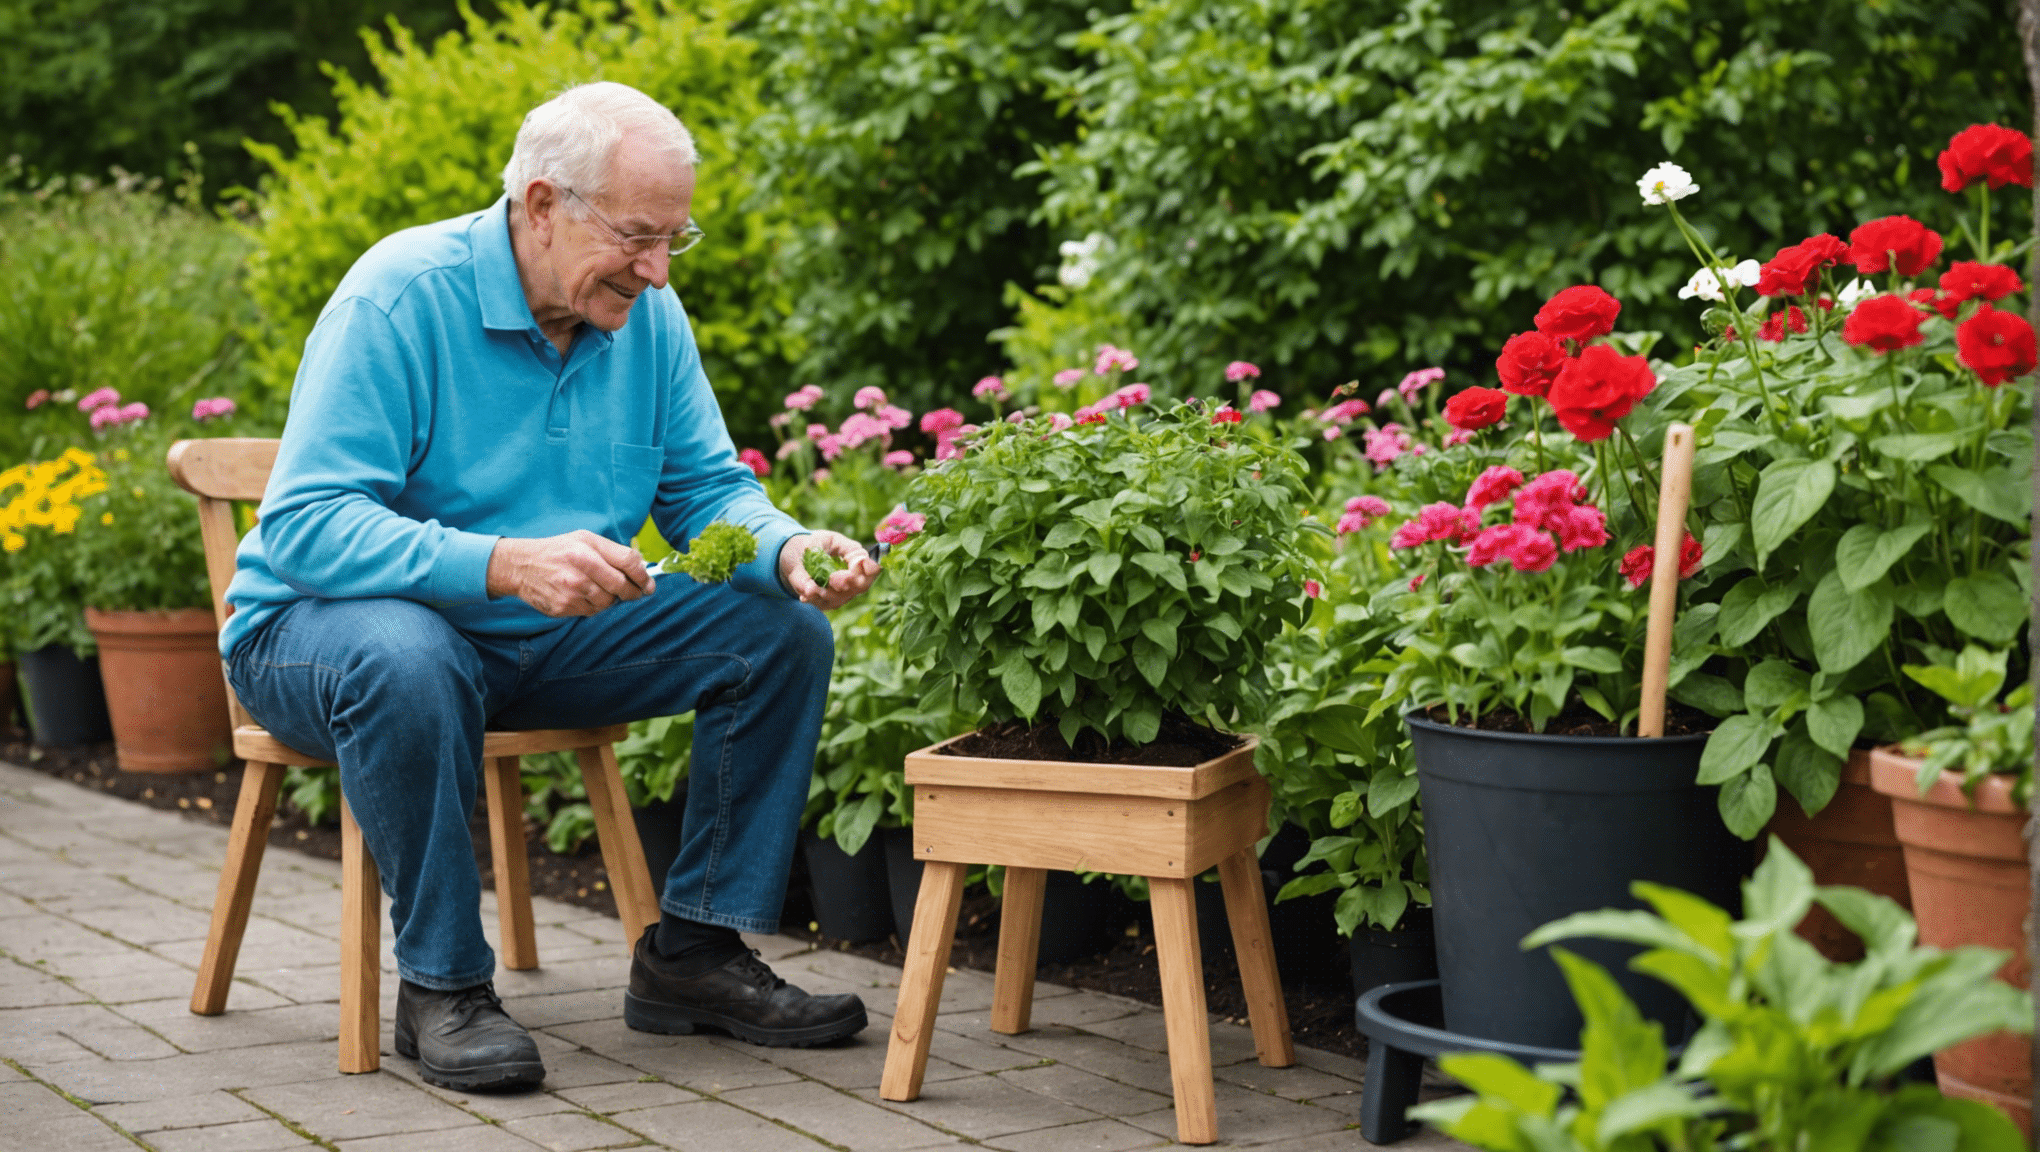 descubra os benefícios dos bancos de jardinagem para idosos, incluindo maior conforto, acessibilidade e facilidade de uso. descubra como os bancos de jardinagem podem tornar a jardinagem uma atividade mais agradável e administrável para os idosos.